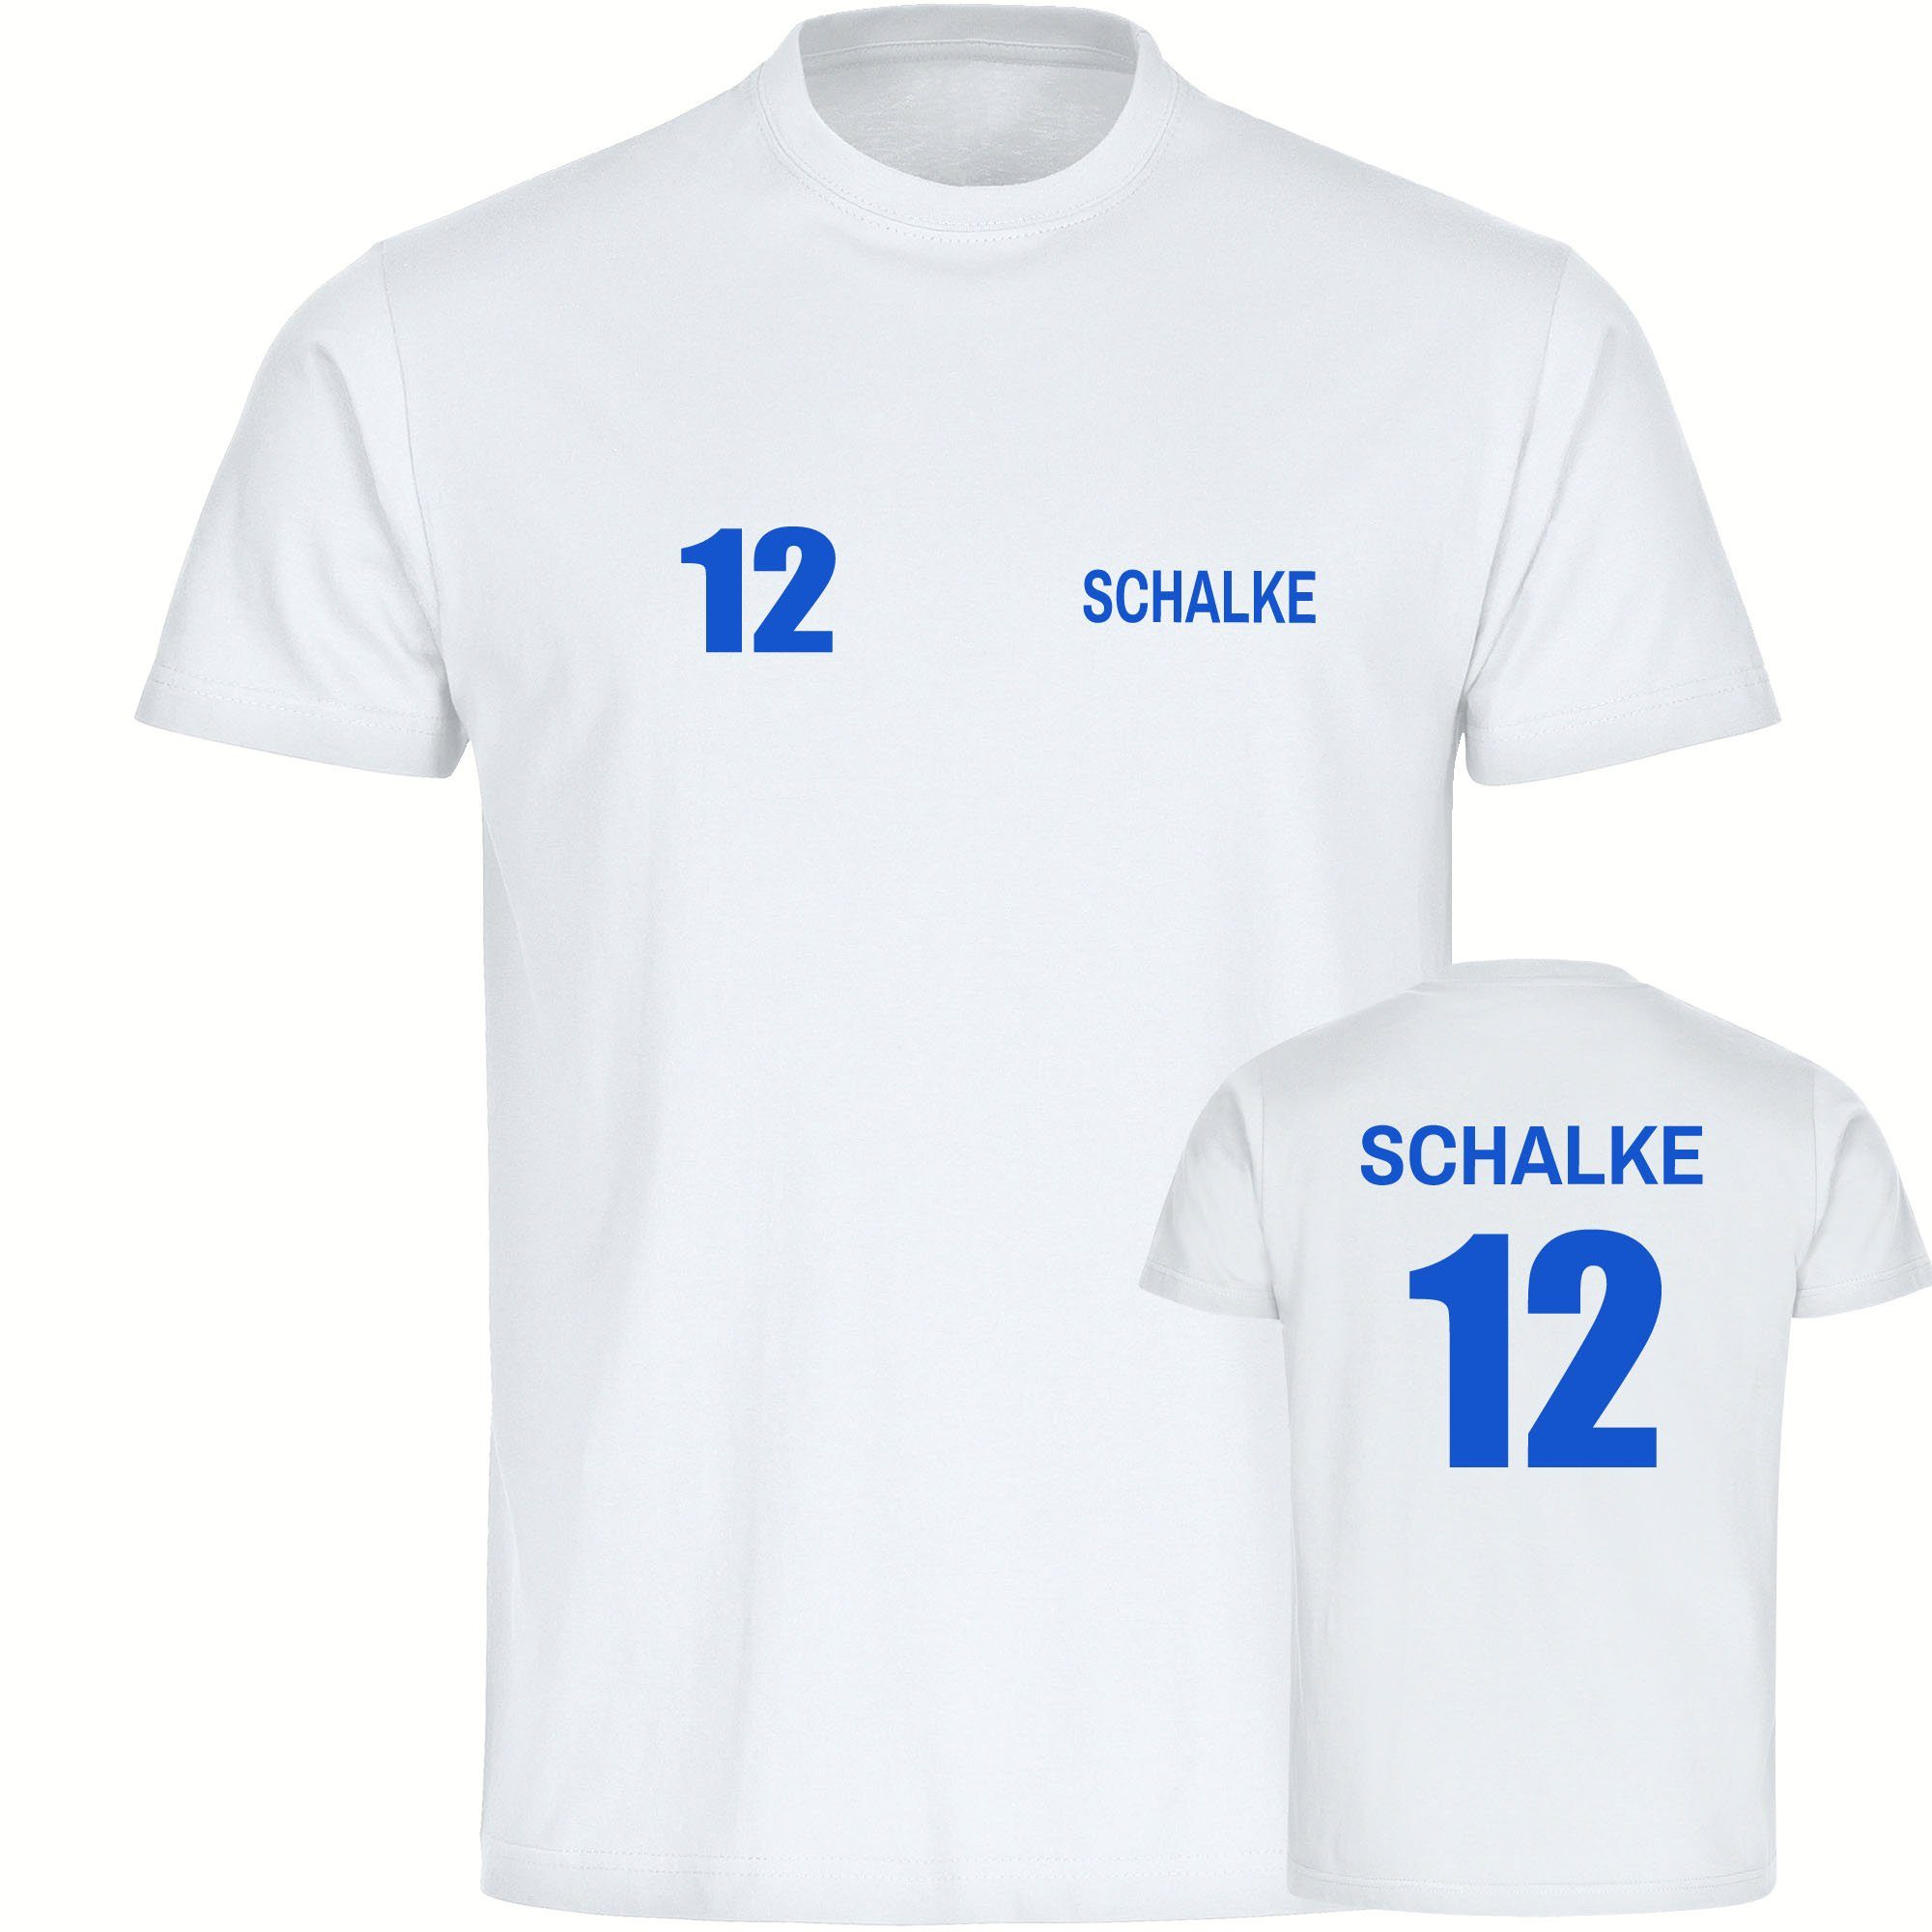 multifanshop T-Shirt Herren Schalke - Trikot 12 - Männer